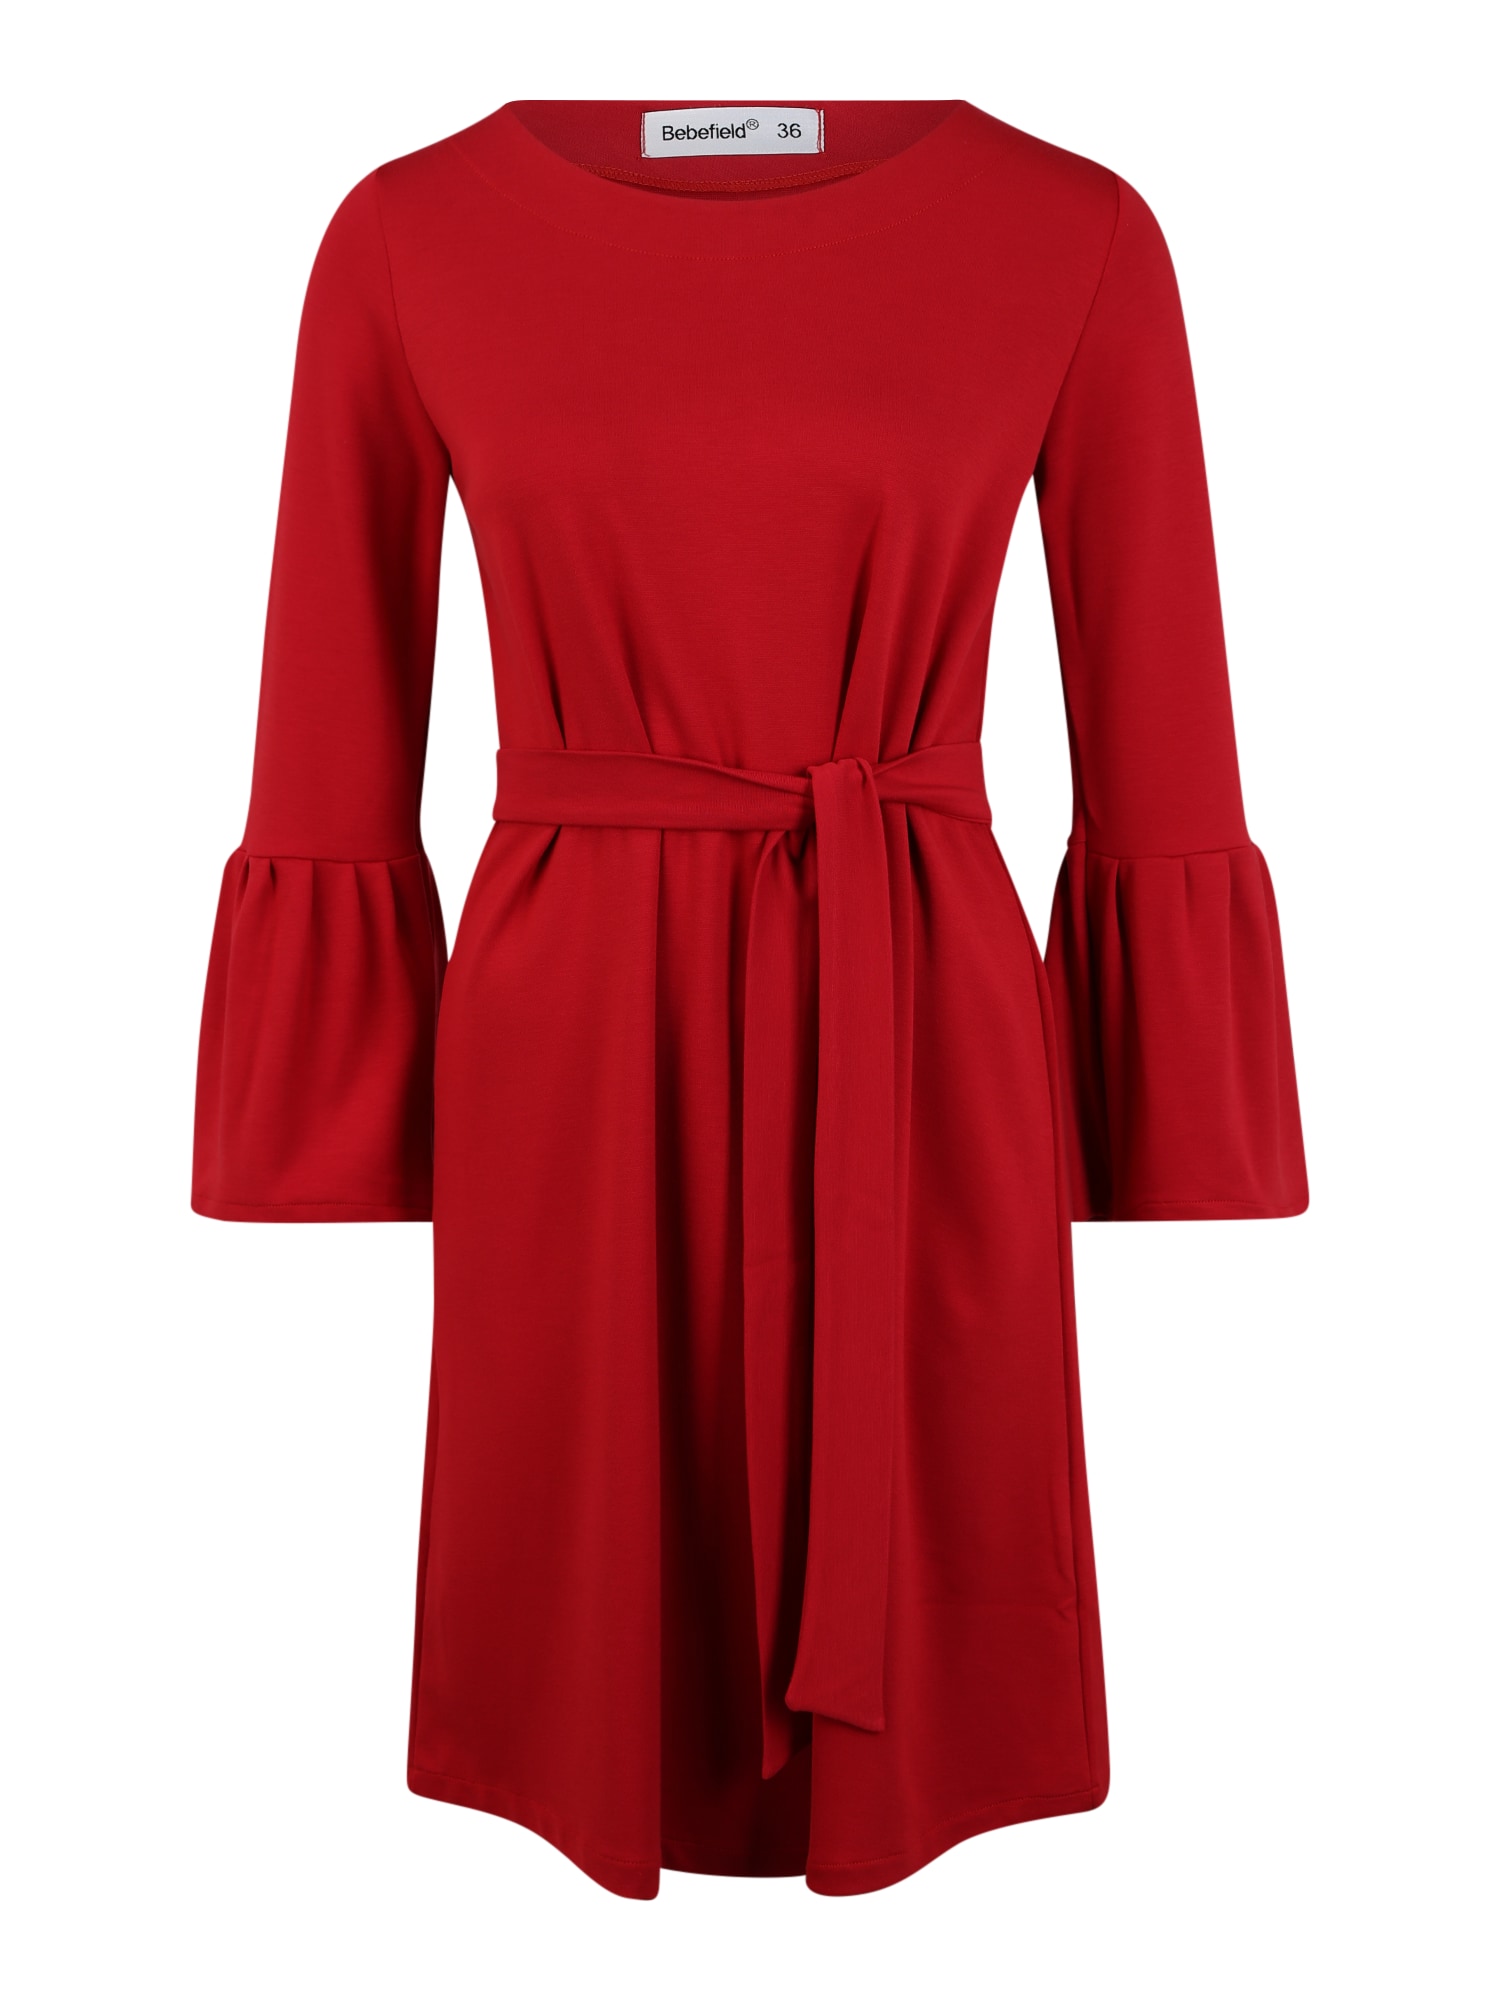 Šaty Lucia červená Bebefield